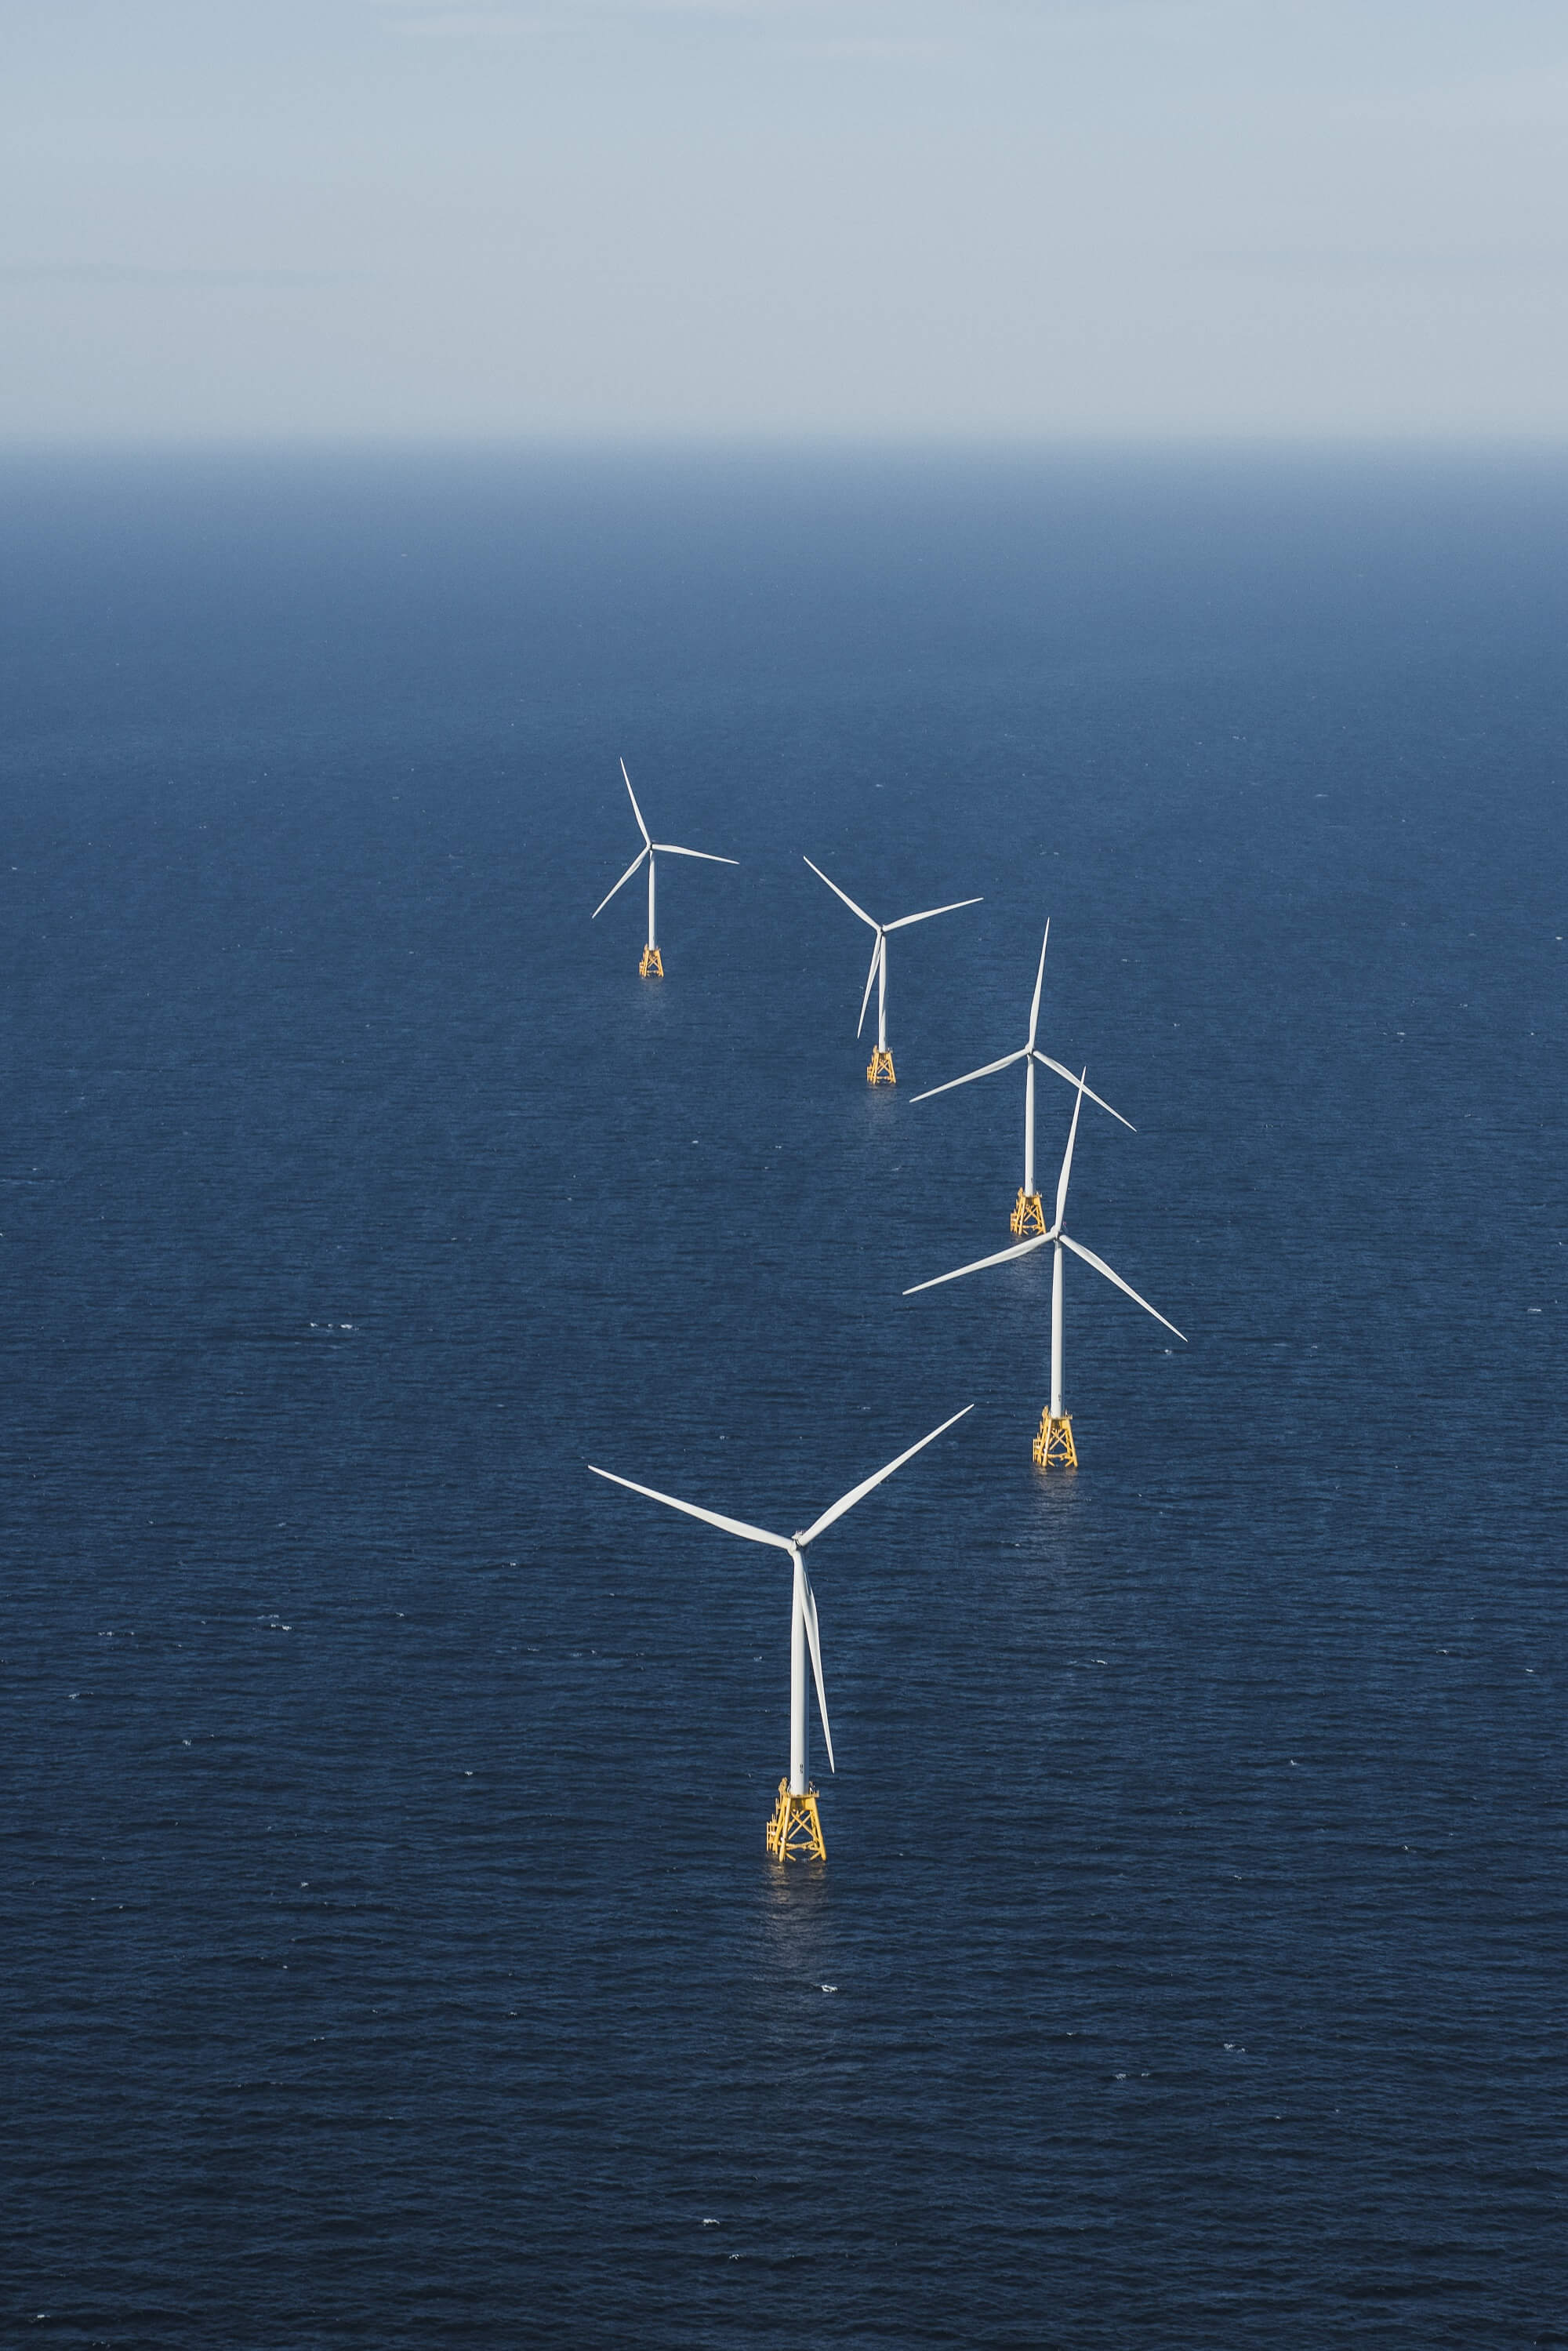 Ørsted wind turbines off Block Island